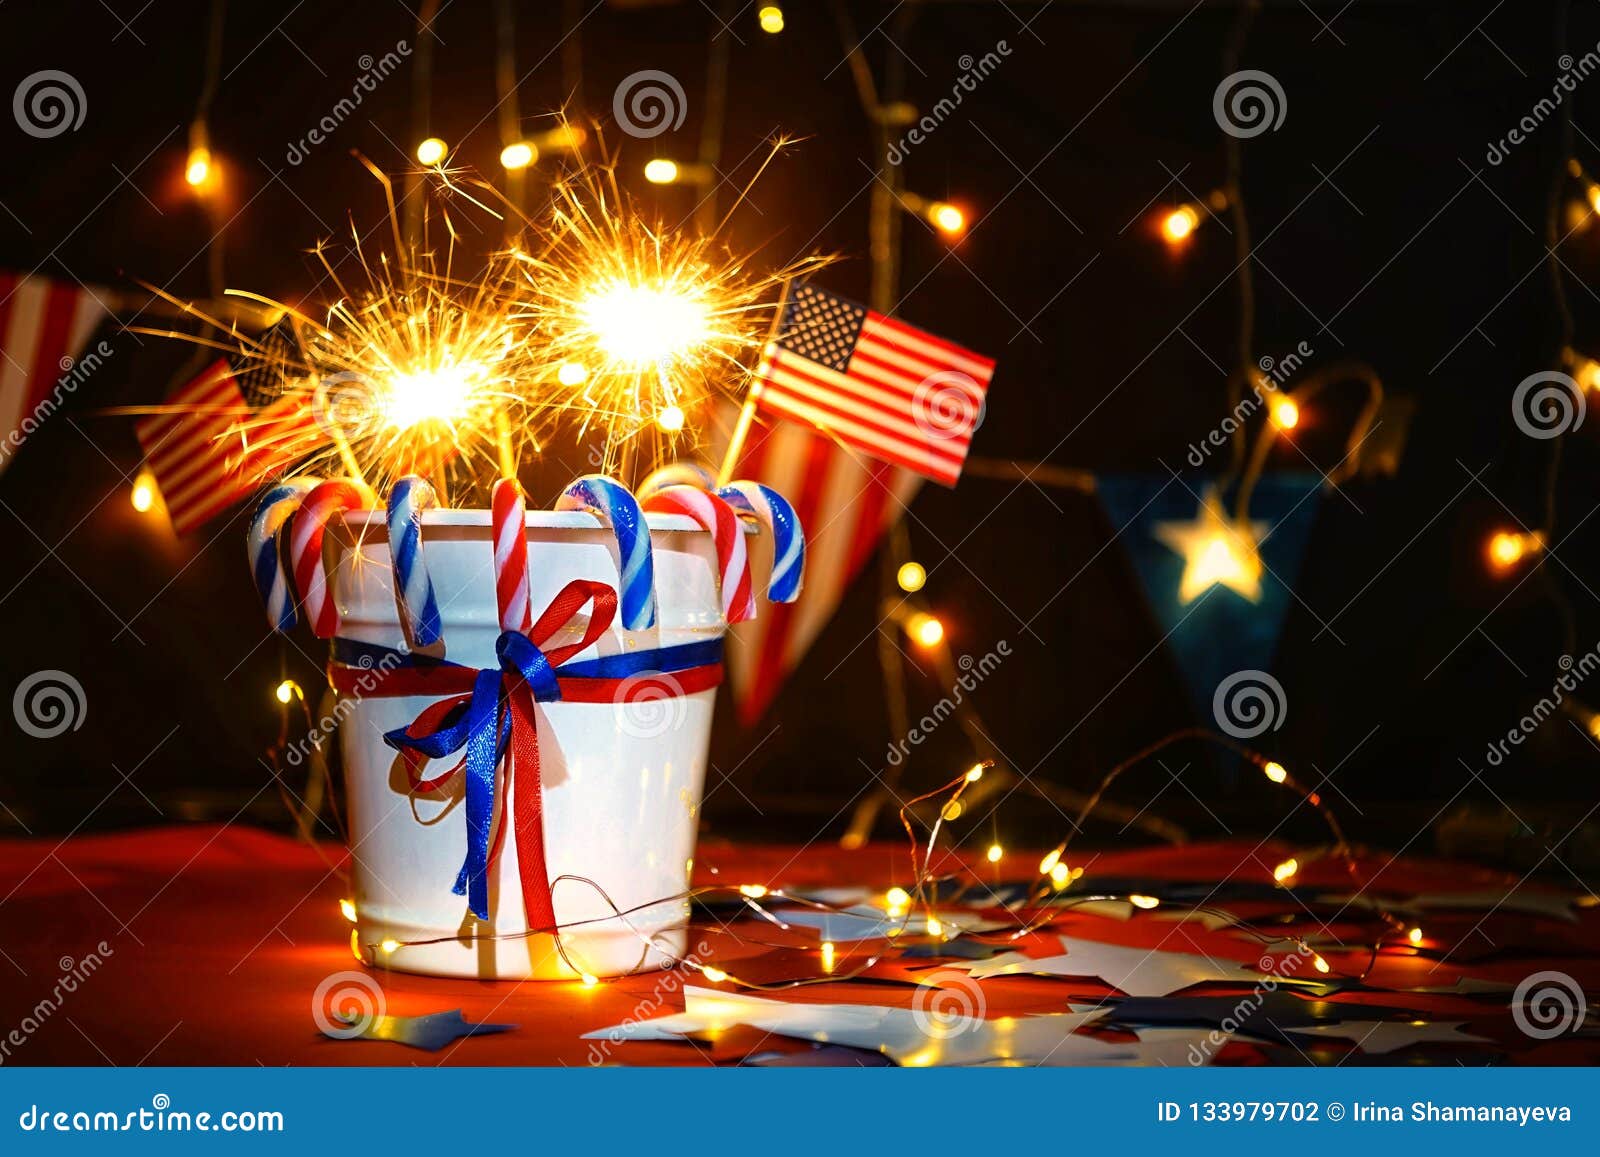 L'esposizione dei fuochi d'artificio celebra la festa dell'indipendenza della nazione degli Stati Uniti d'America sul quarto di luglio con noi bandiera, le stelle filante, caramella, sui precedenti rossi e sui precedenti della ghirlanda e del bokeh di Natale, con le stelle, la conclusione della celebrazione di libertà